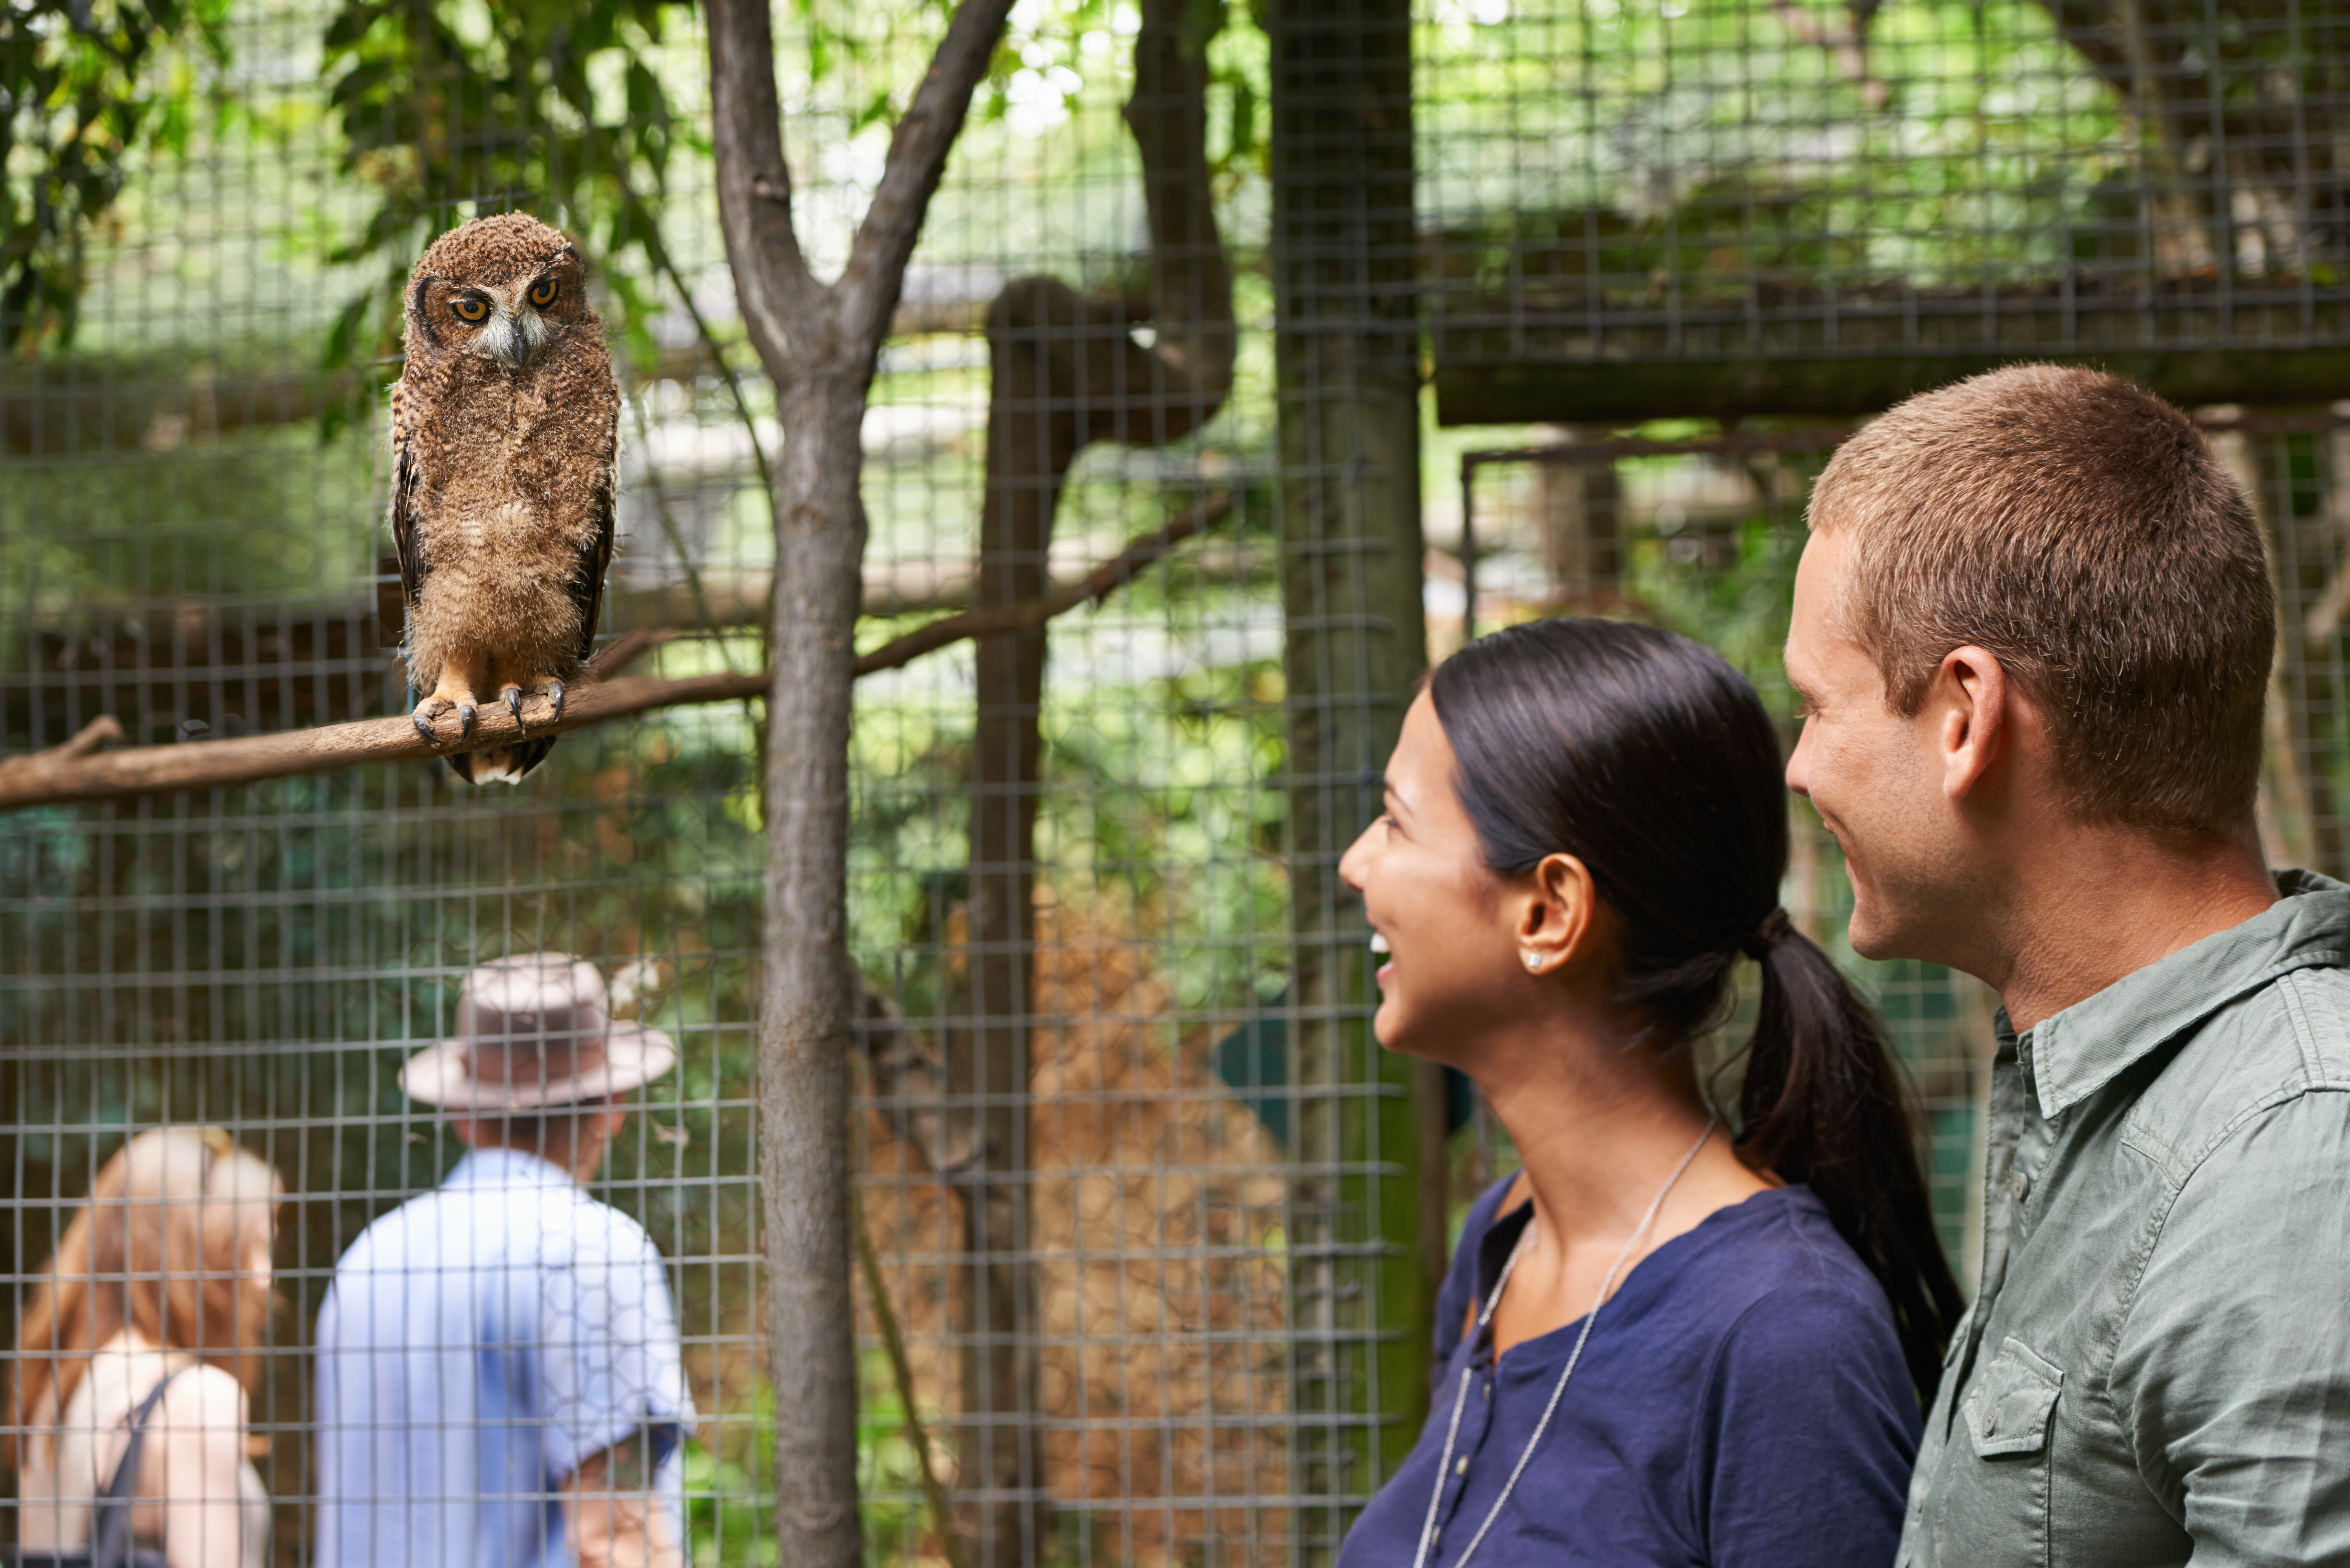 Jeune couple en rendez-vous dans un zoo | Source : Getty Images